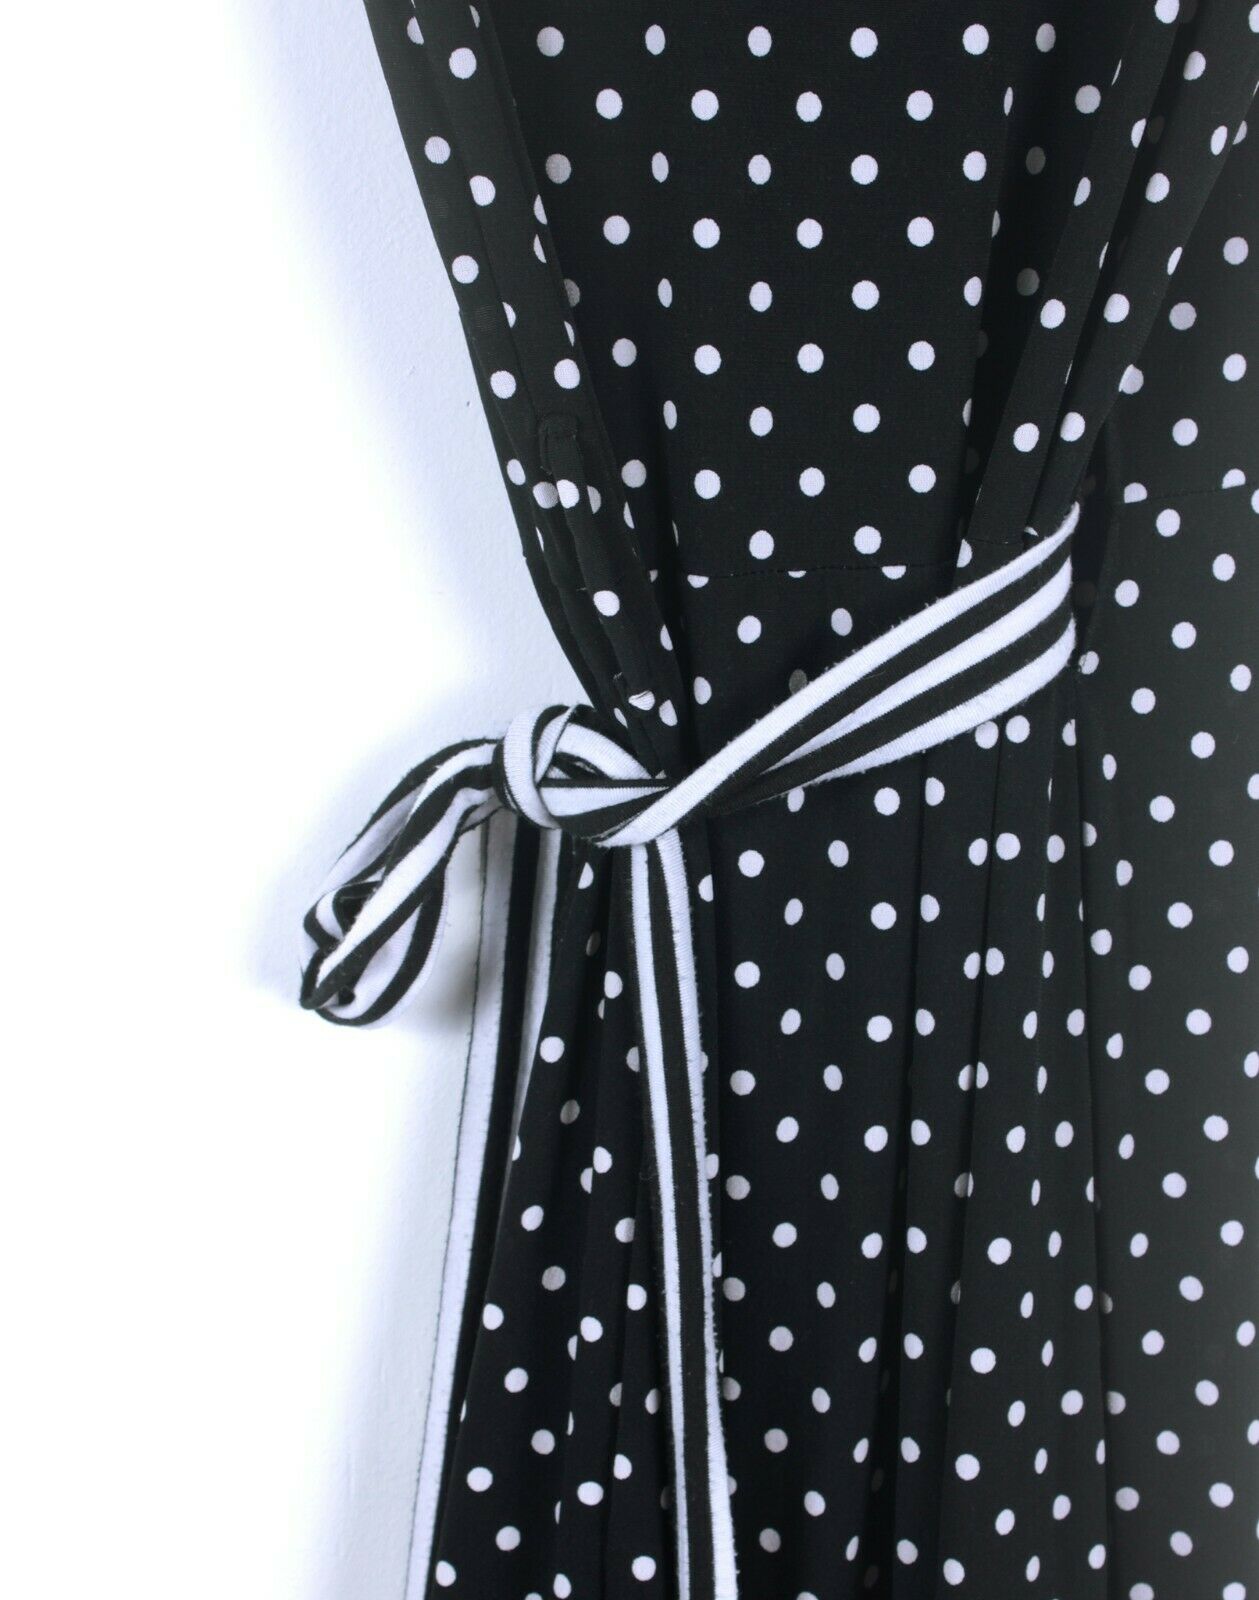 Shona Joy Black Polka Dot Wrap Dress - Size 8